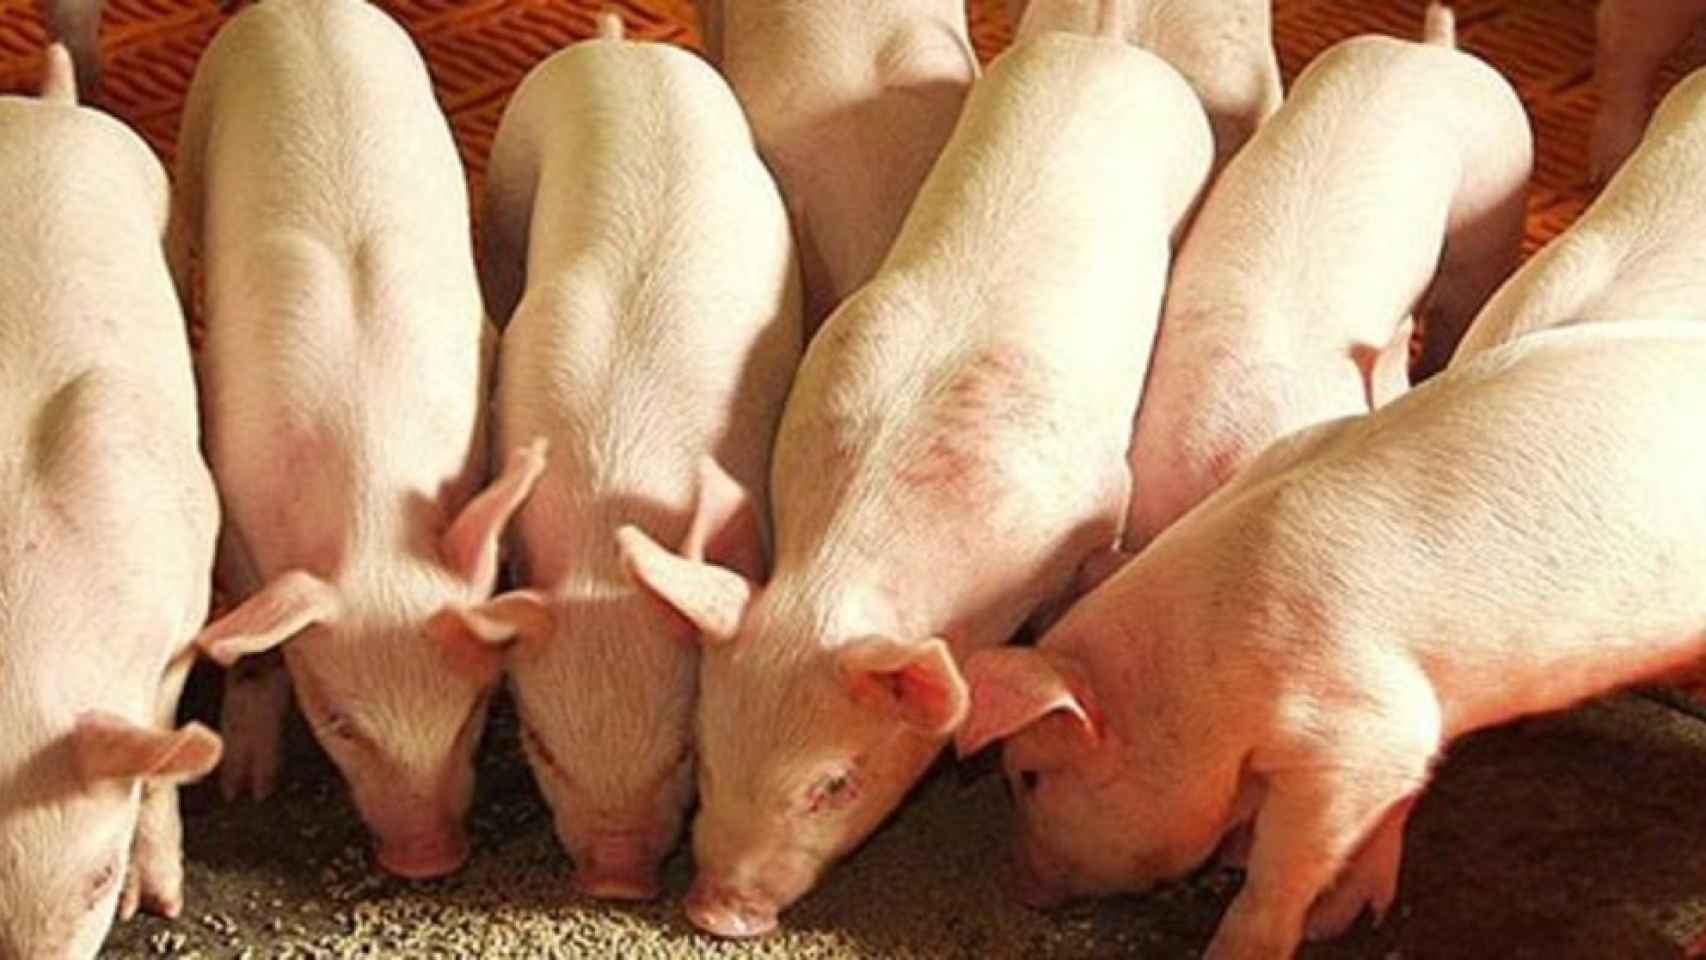 Cerdos a dieta y otras inventivas de China para capear la guerra comercial